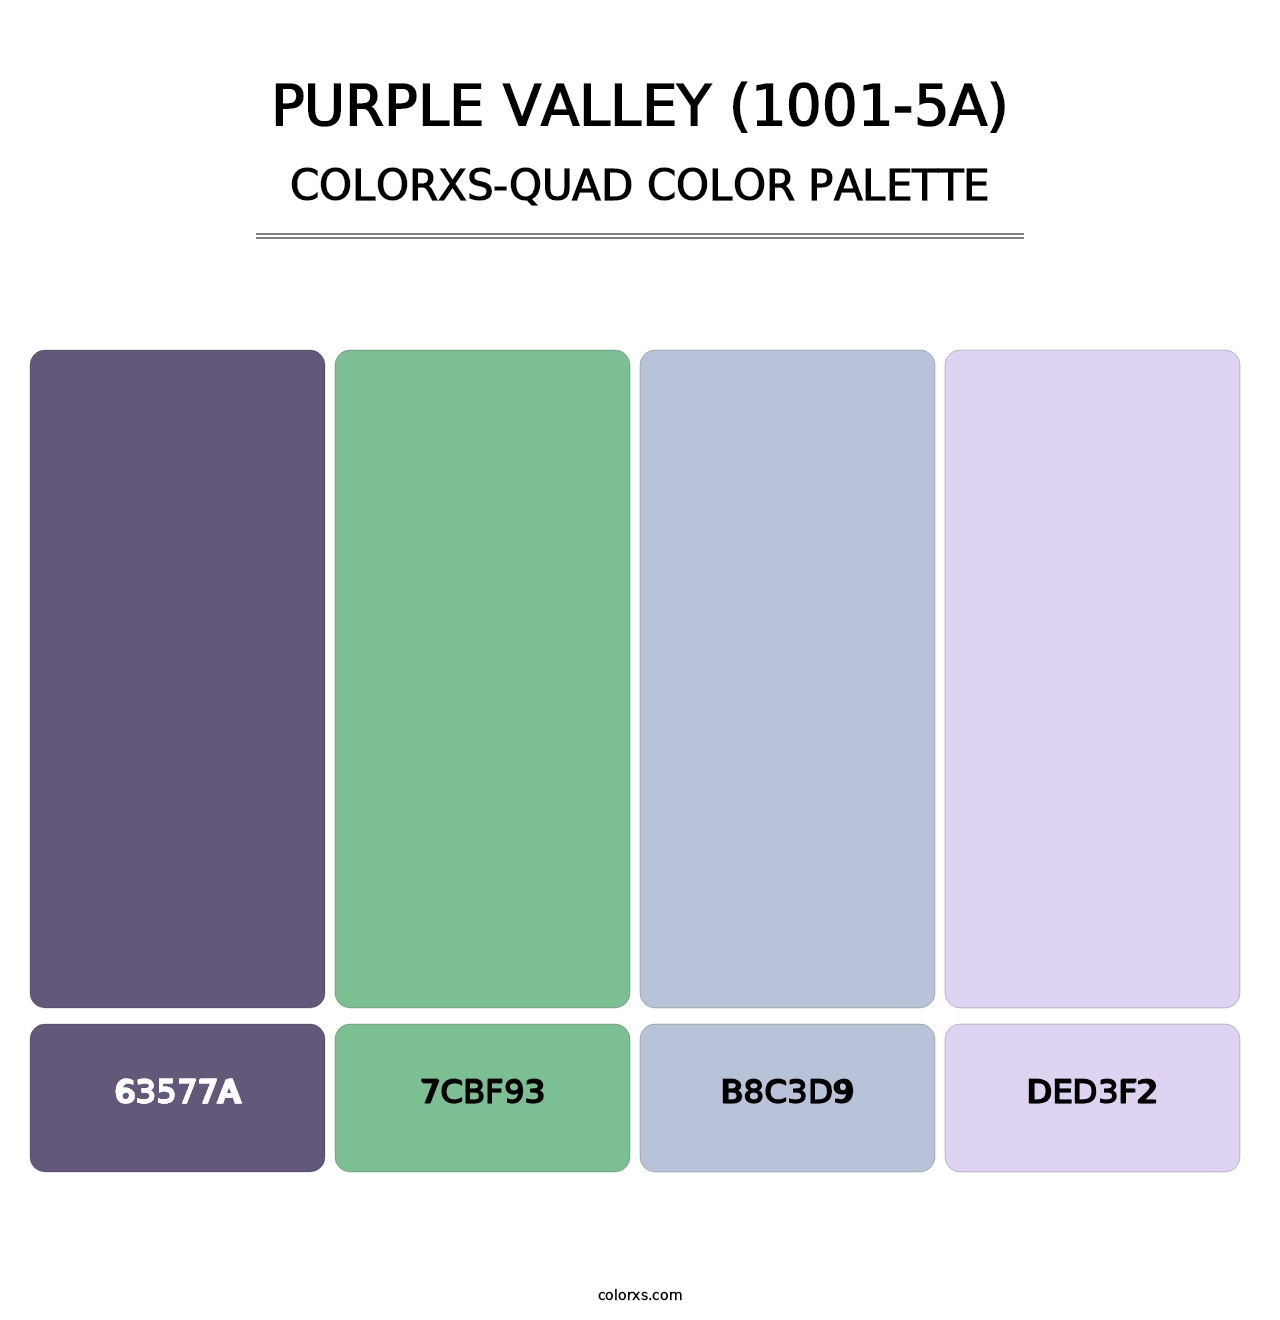 Purple Valley (1001-5A) - Colorxs Quad Palette